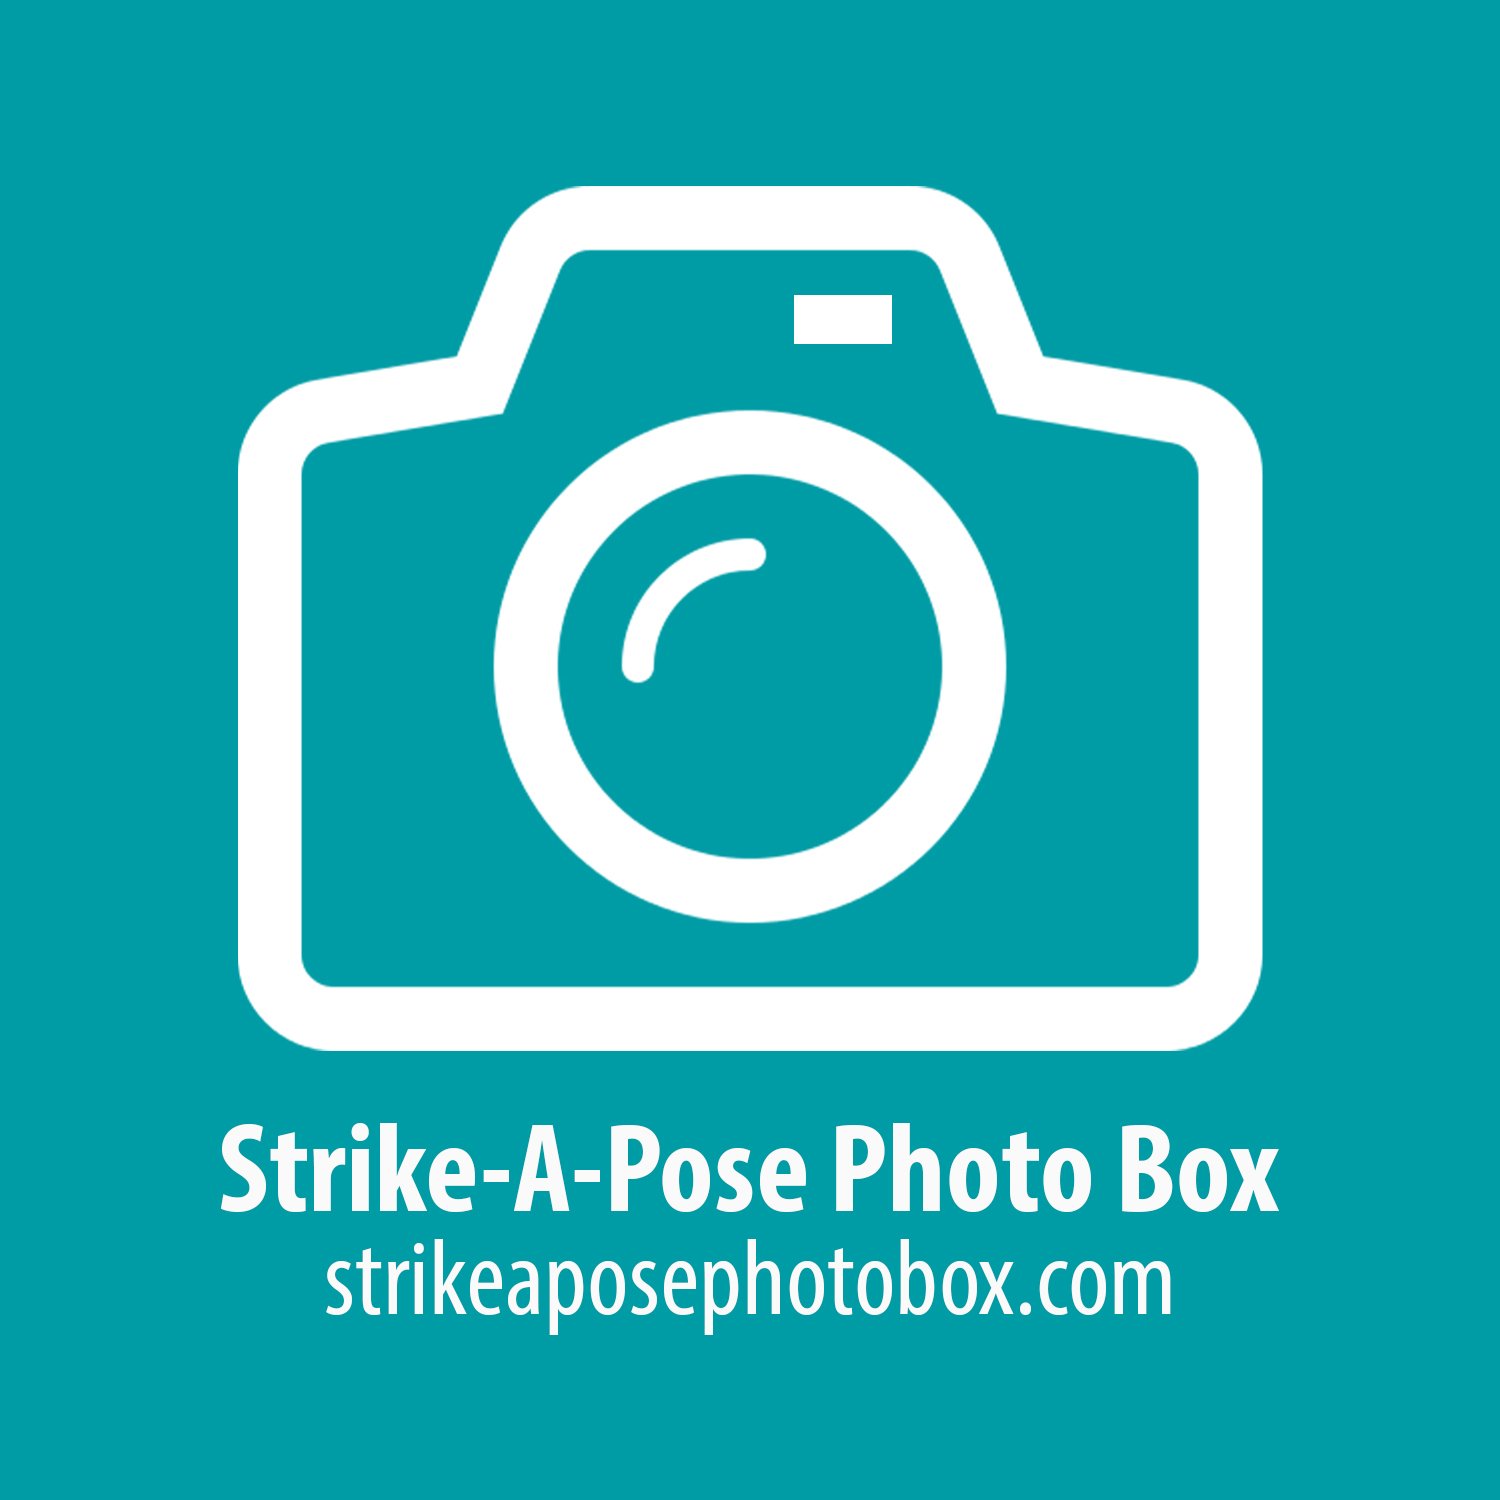 Strike-A-Pose Photo Box strikeaphosephotobox.com